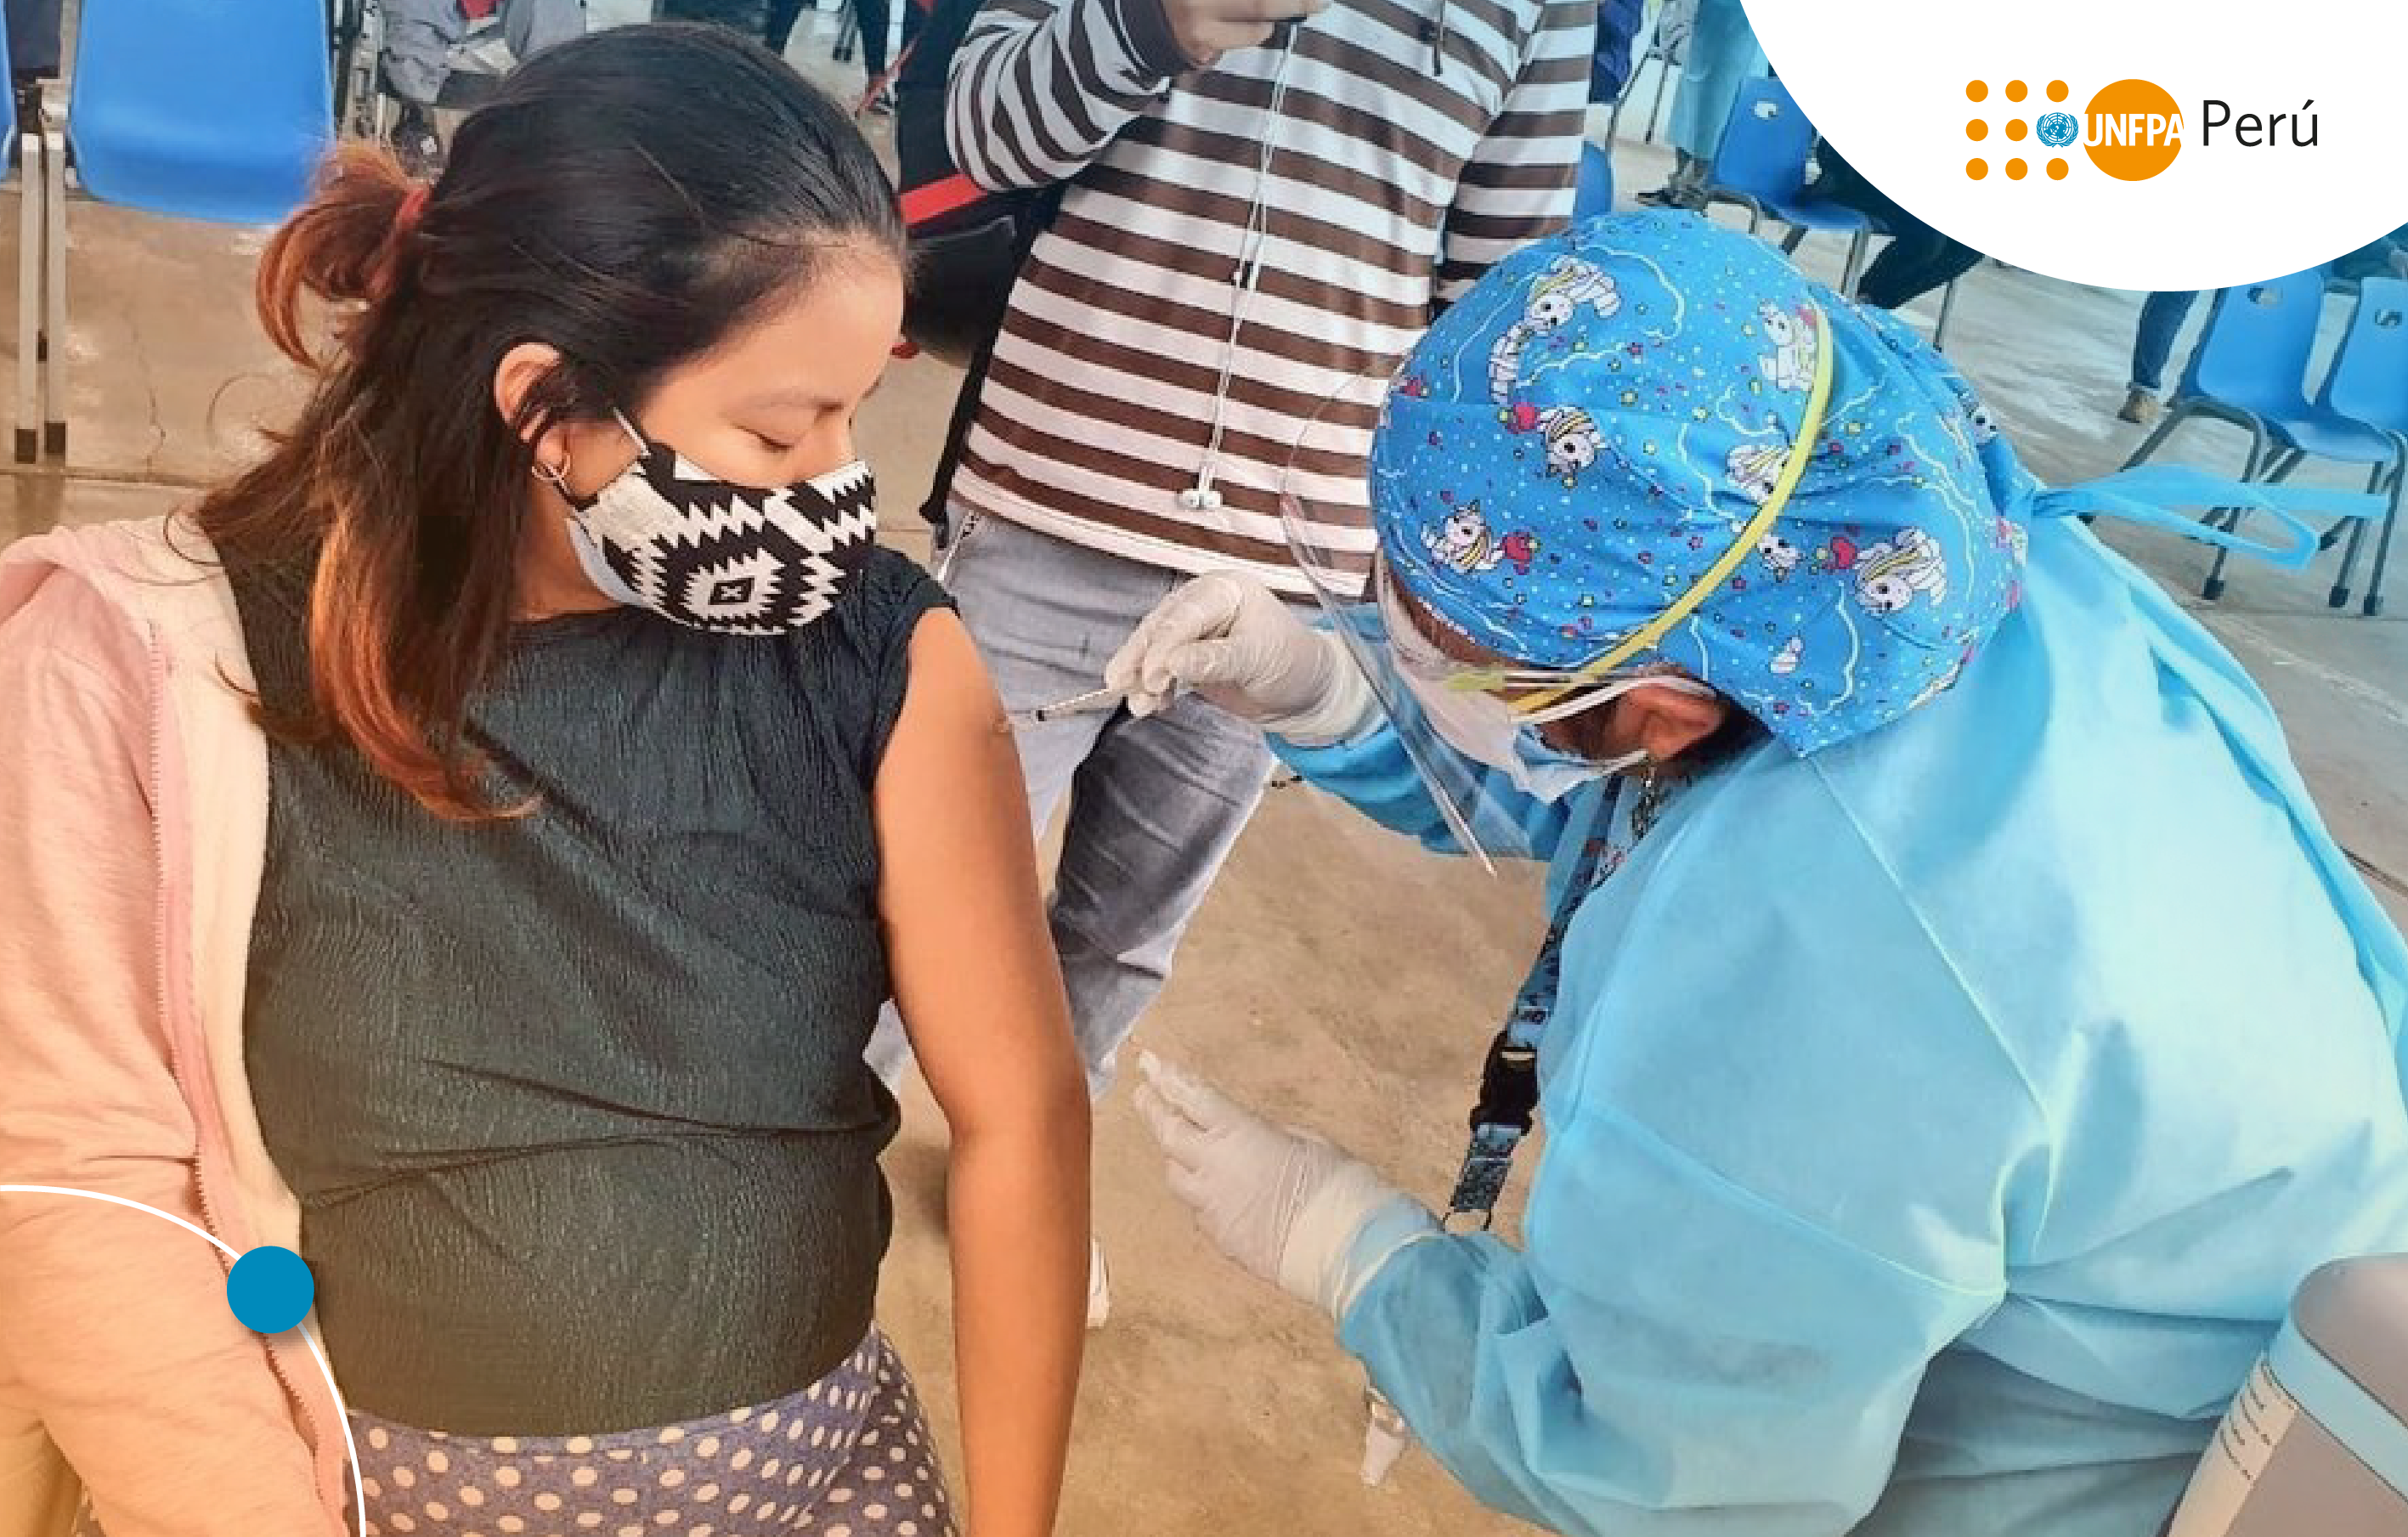 La vacuna covid-19 en embarazadas: ¿en qué mes de gestación deben